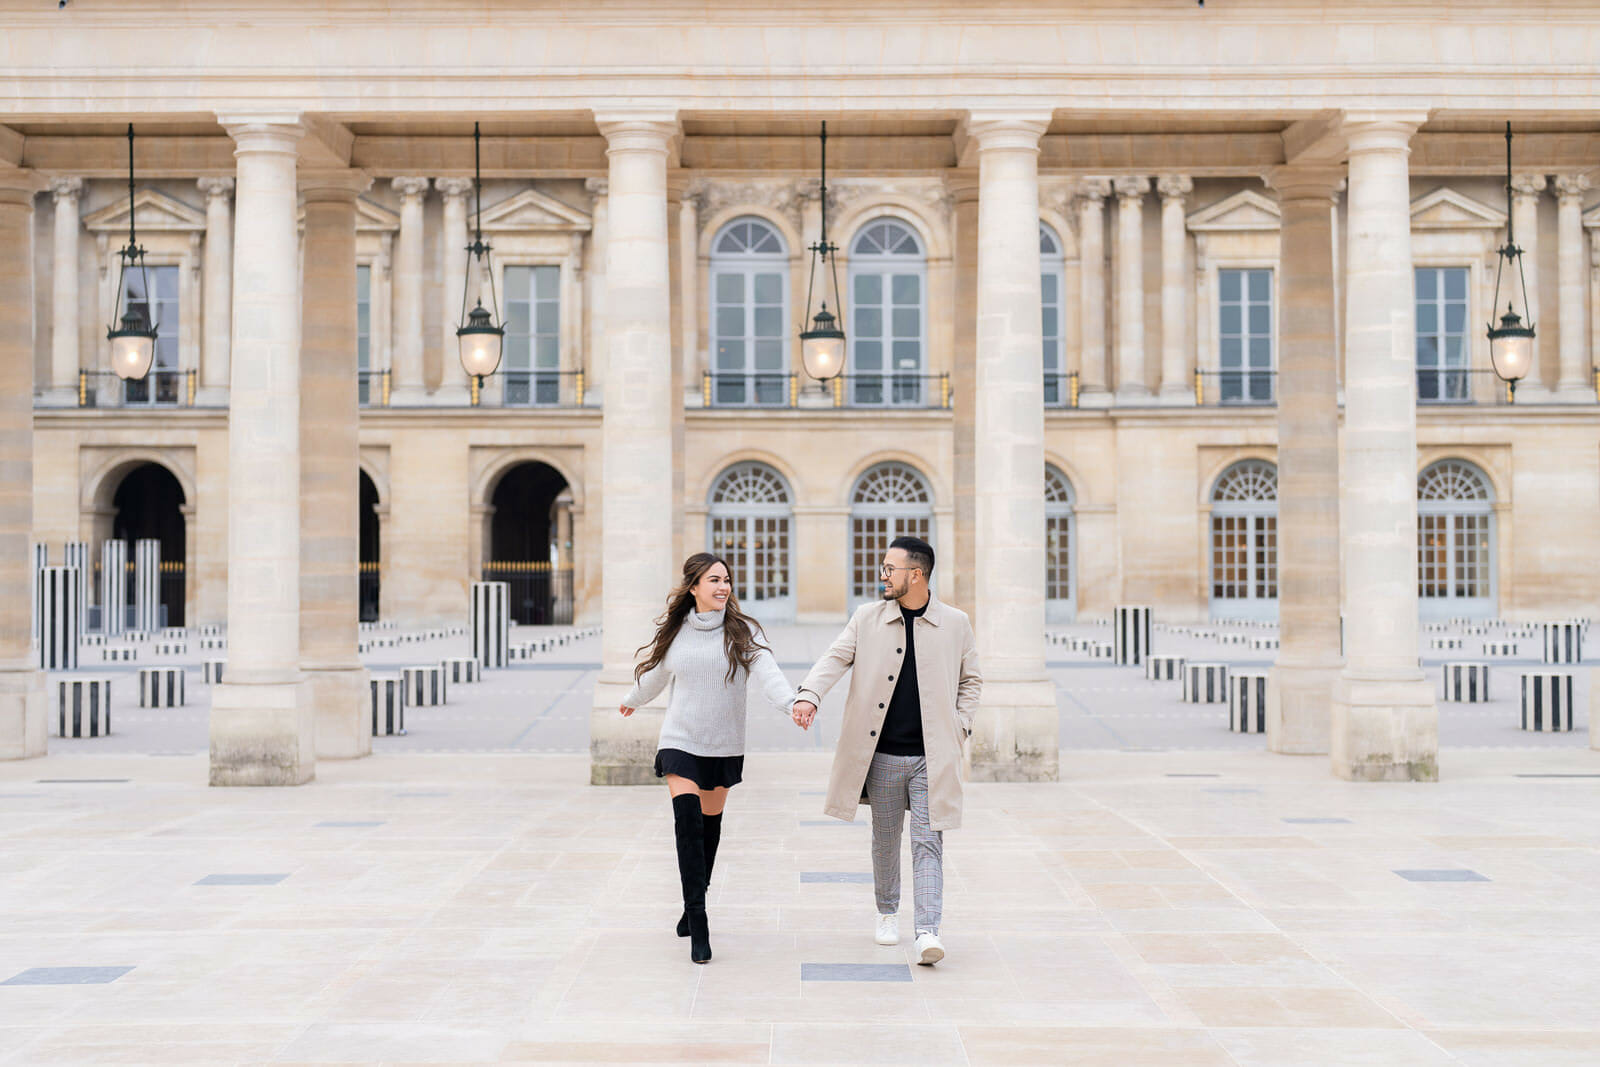 Palais-royal paris playful couple photoshoot